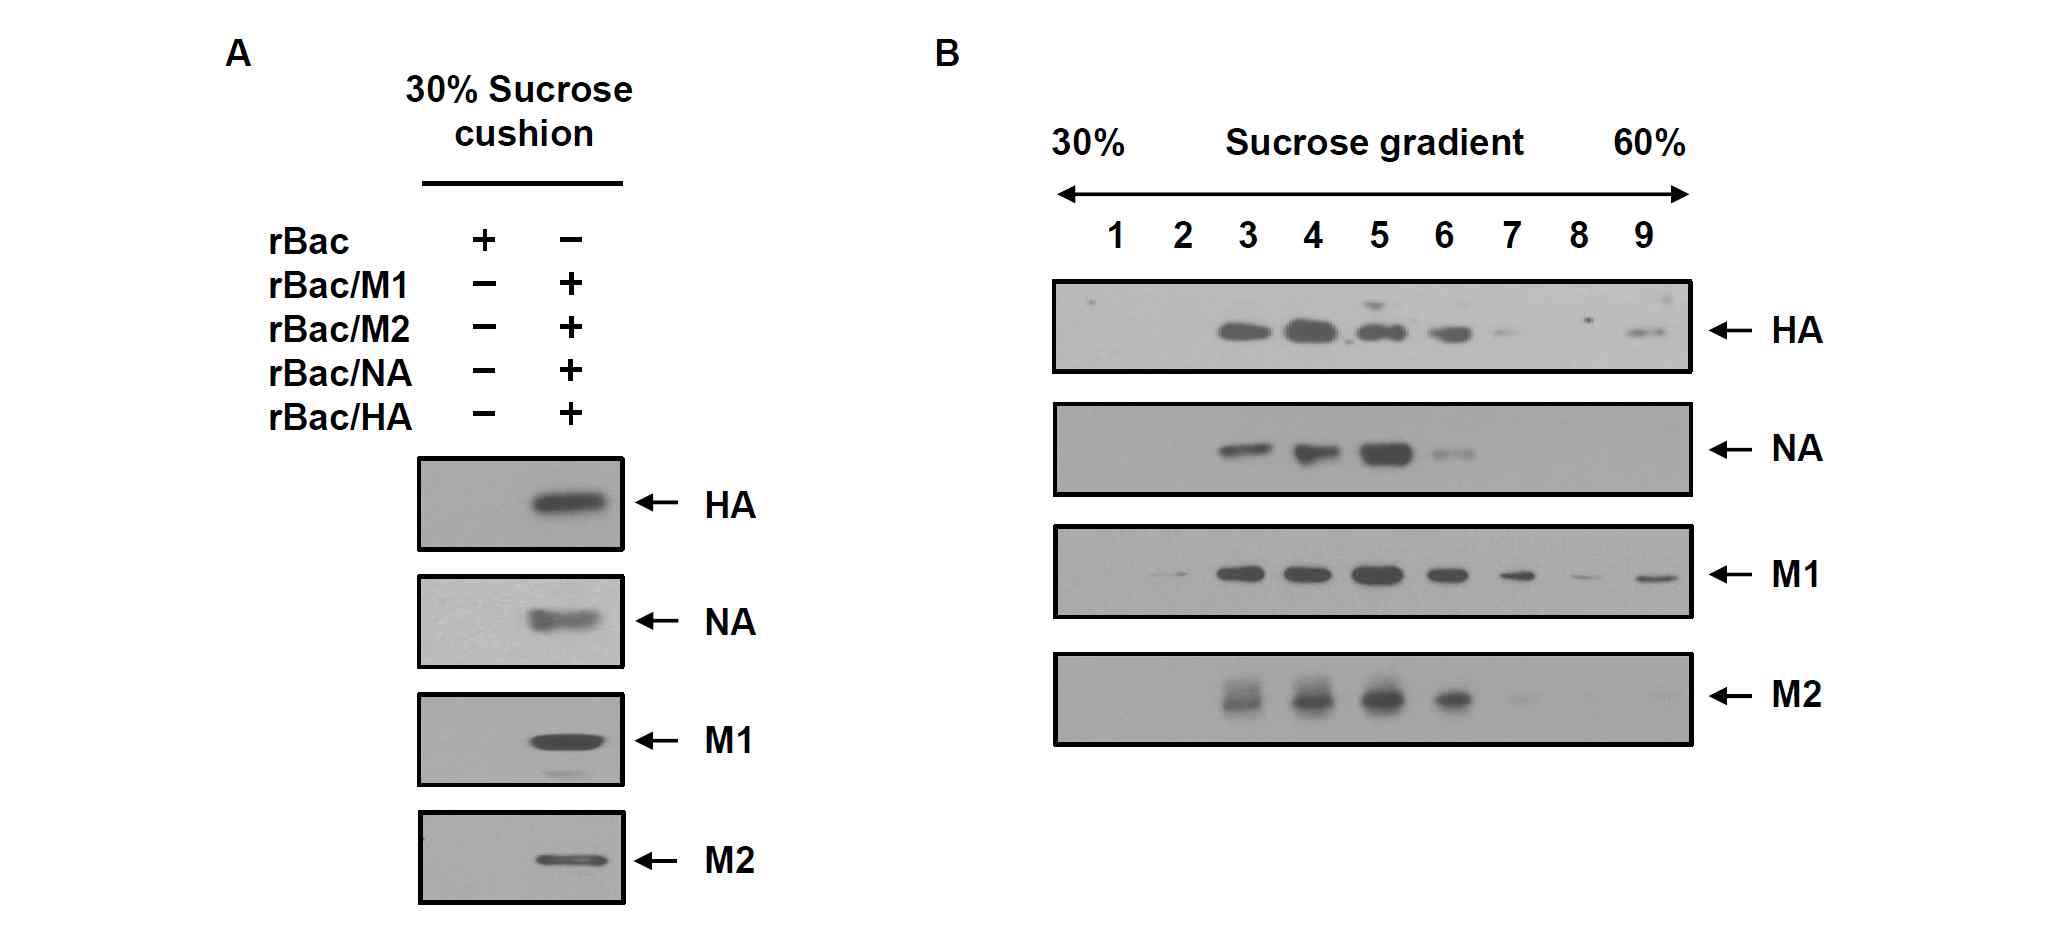 (A) 재조합 배큘로바이러스 rBac/M1, rBac/M2, rBac/NA, rBac/HA가 감염된 TN-5B1-4 세포 배양배지를 30% sucrose cushion에서 초원심분리하여 침전물을 확보하고 재조합 인플루엔자 바이러스 M1, M2, NA, HA 단백질의 존재를 Western blot으로 분석함. (B) Sucrose cushion 침전물을 30-60% sucrose density gradient 초원심분리 방법으로 분획하고 Western blot으로 분석함